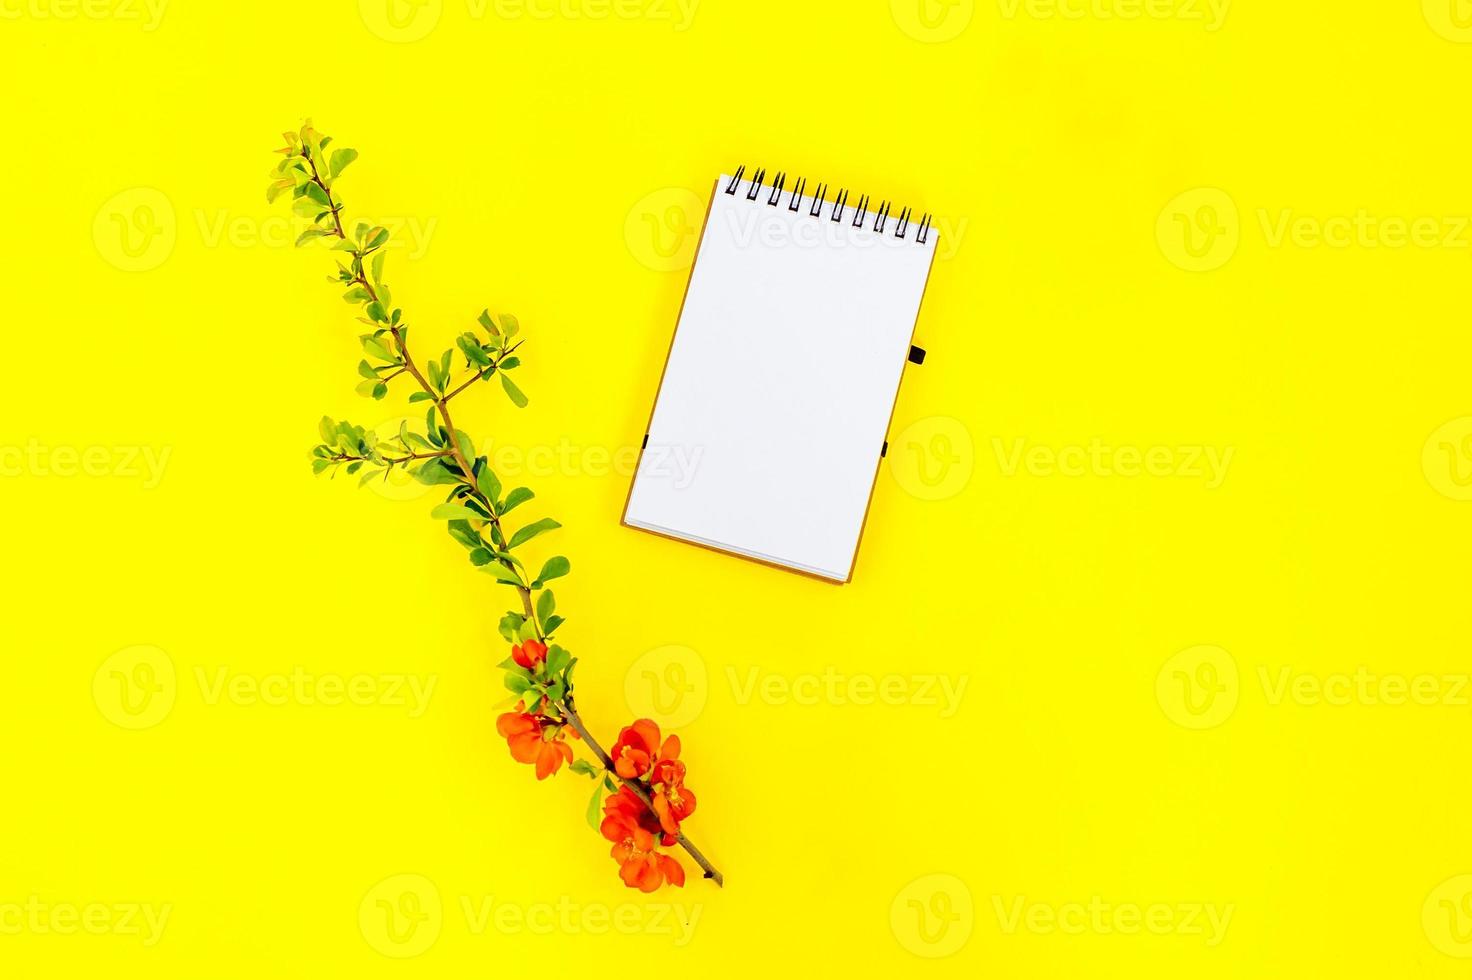 mise à plat créative de cadre de bloc-notes en spirale vierge maquette et pétales de fleurs de coing sur fond jaune avec espace de copie dans un style minimal, modèle de lettrage, texte ou votre conception photo